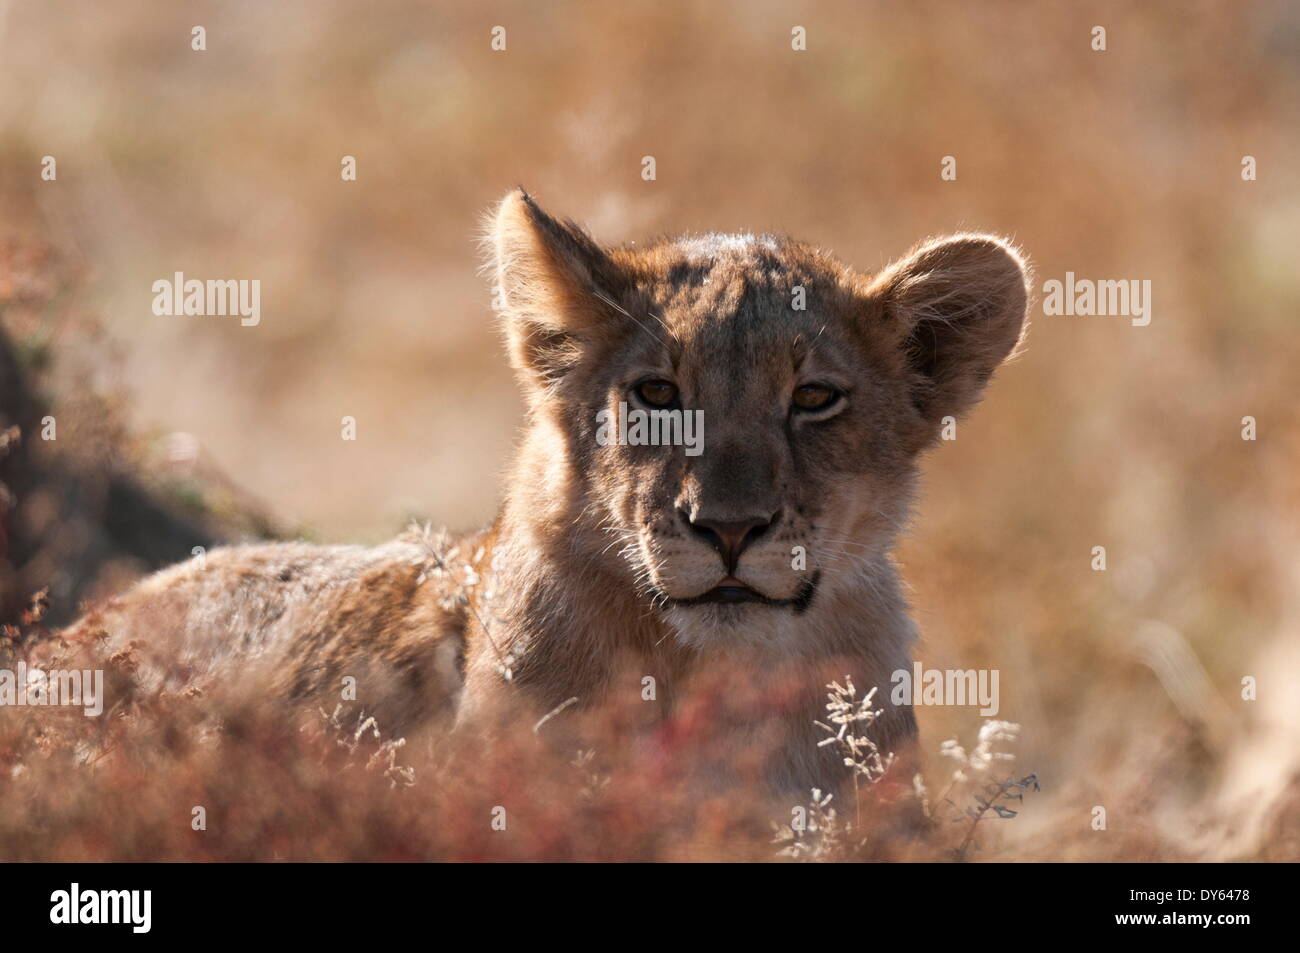 Lion (Panthera leo), Mashatu Game Reserve, Botswana, Africa Stock Photo